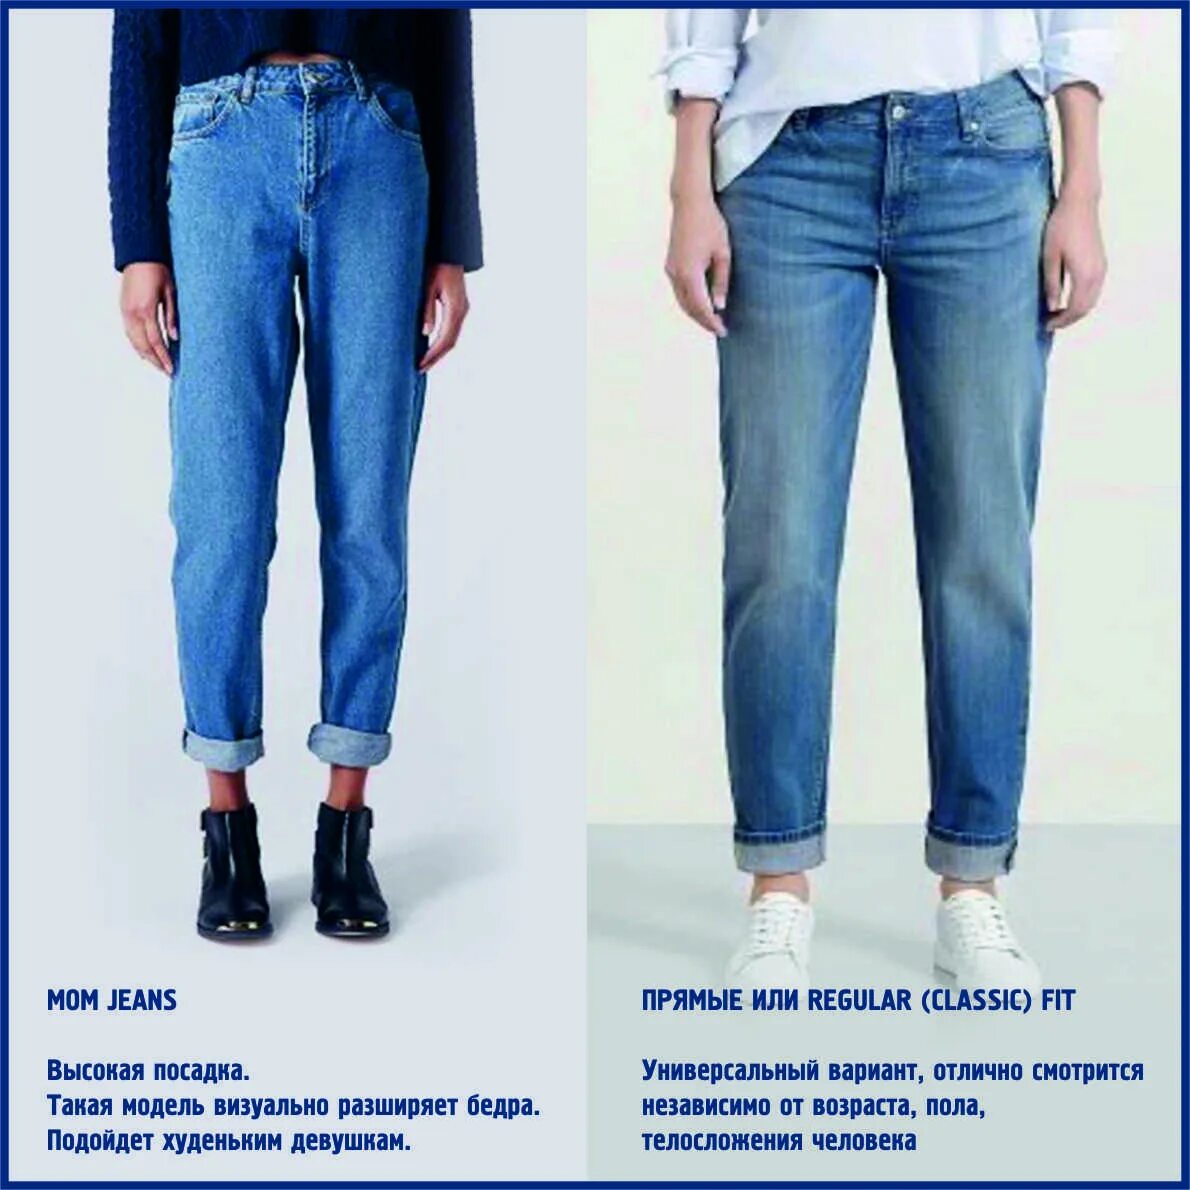 Какая длина должна быть у джинс. Джинсы женские подобрать. Правильные джинсы женские. Посадка джинс. Правильная посадка джинс мом.